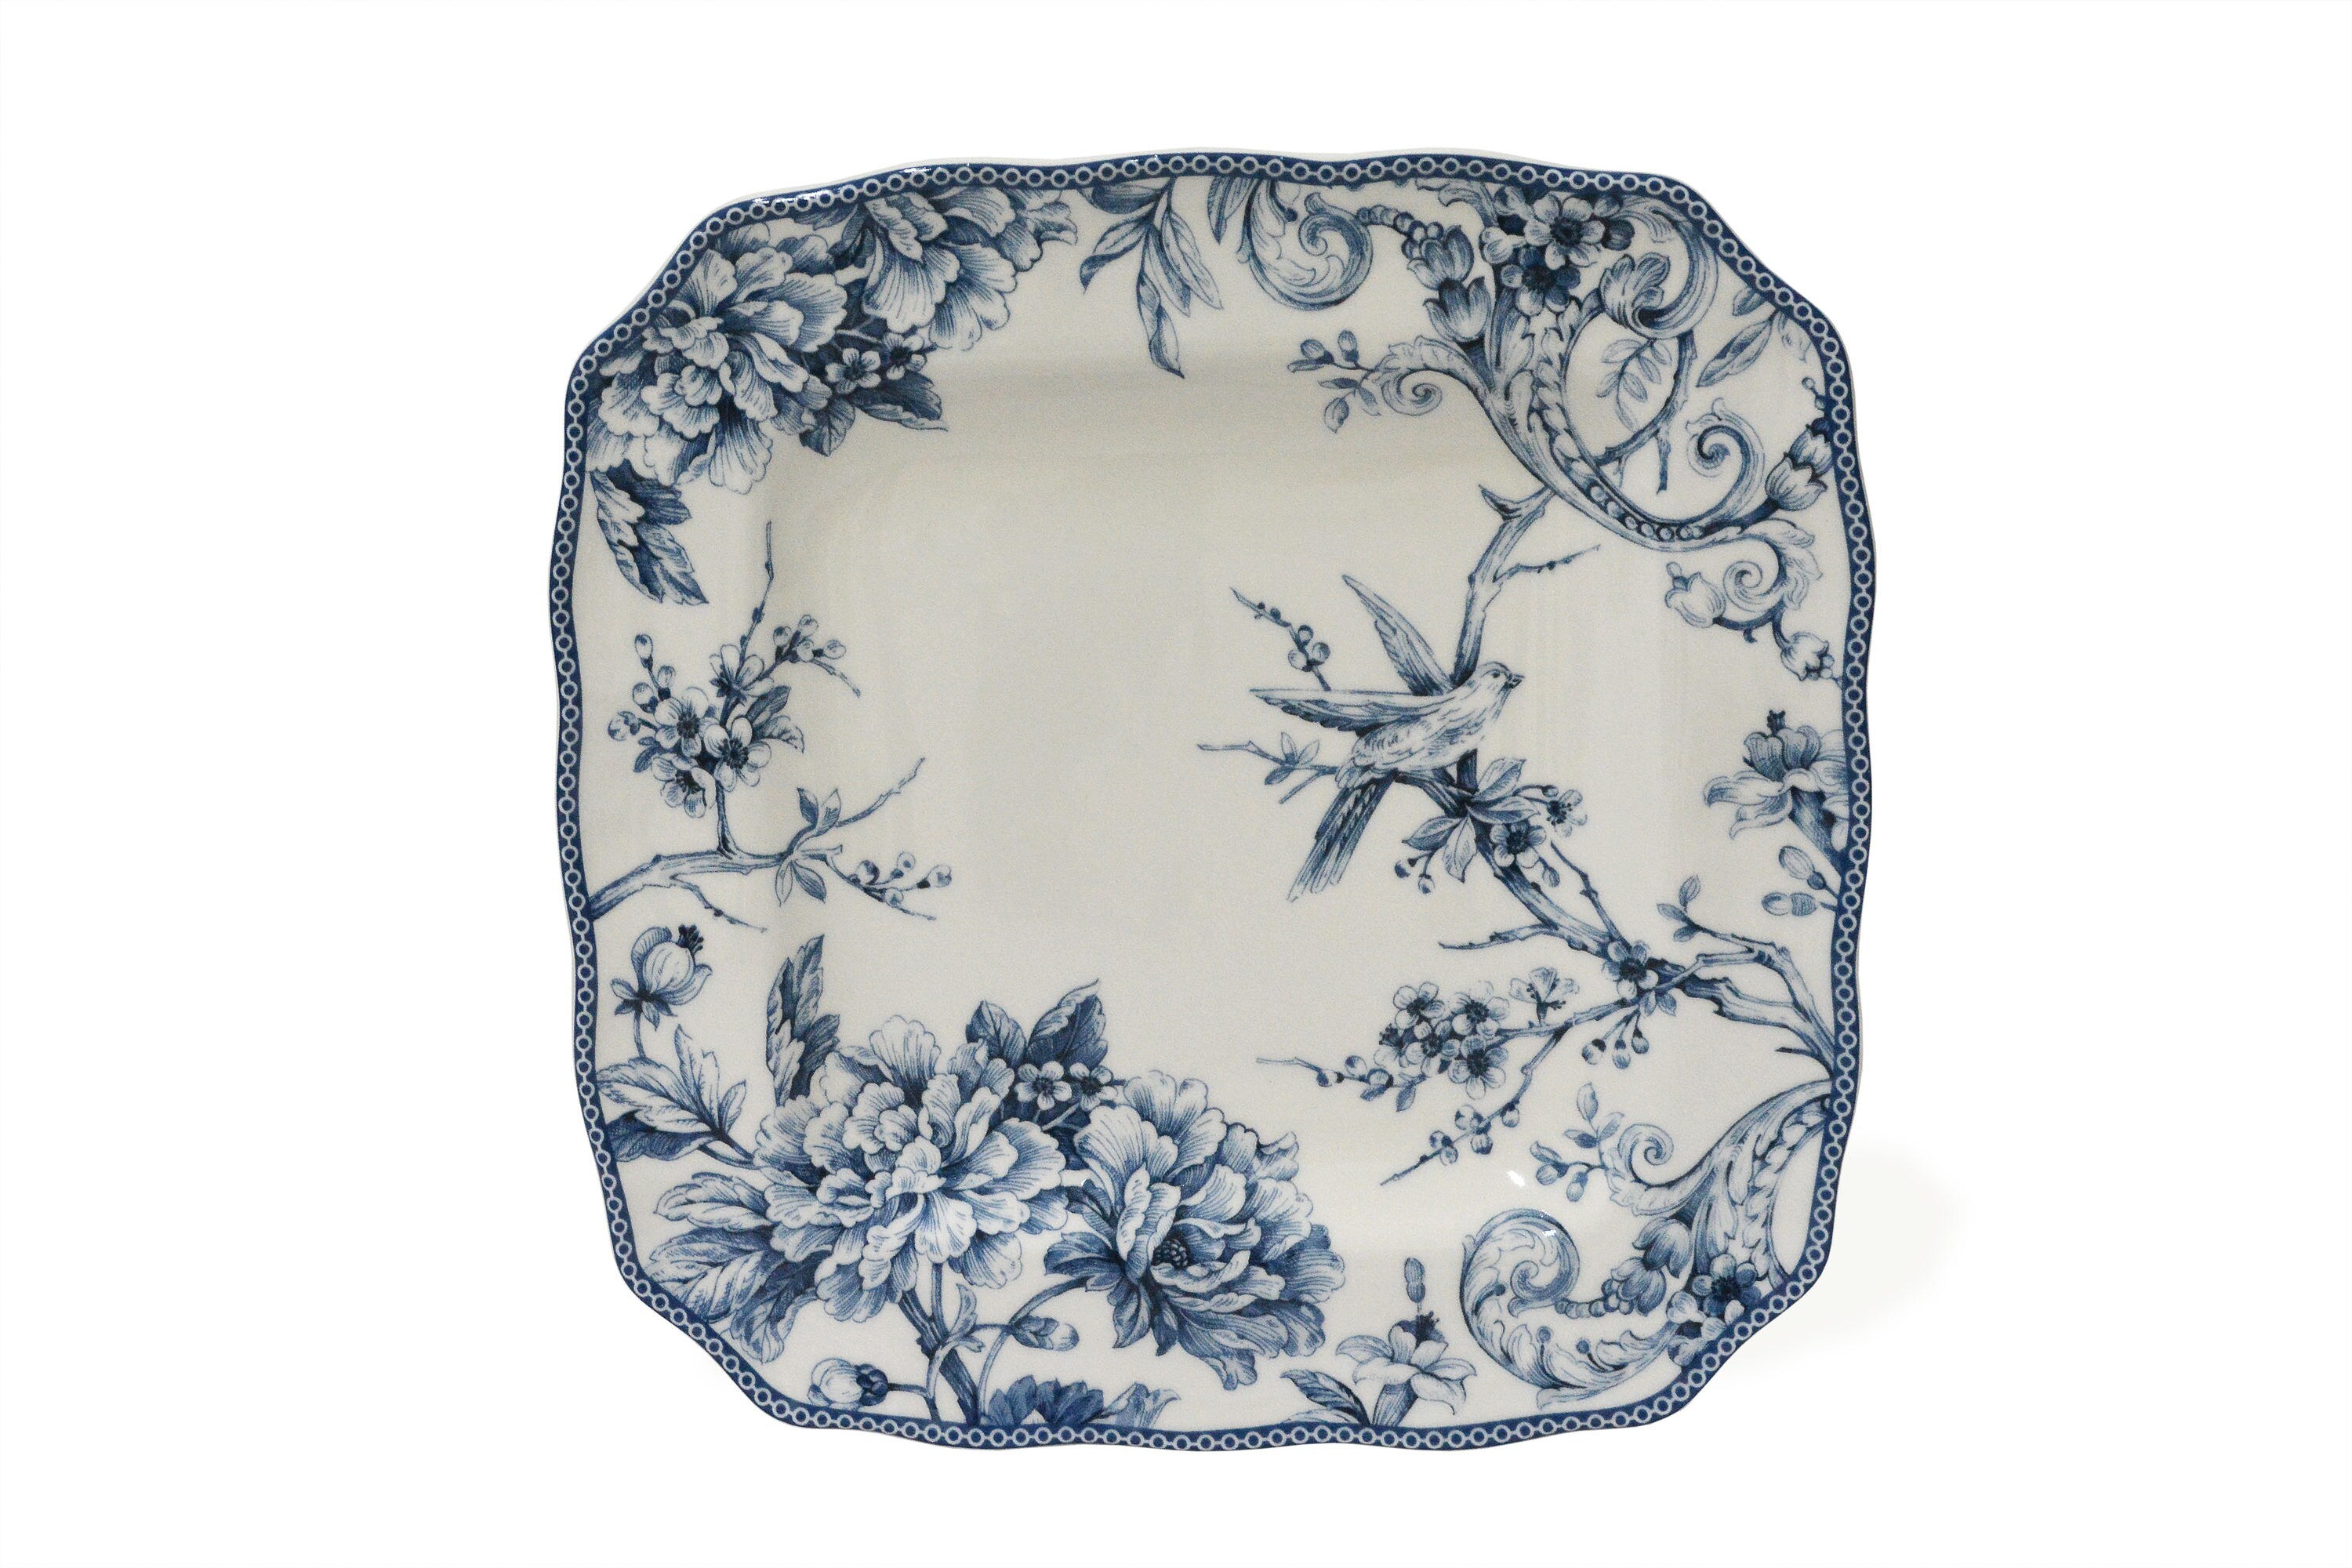 222 Fifth Eliza Spring Light Blue Floral Porcelain Dinner Plates Set of 4 New 